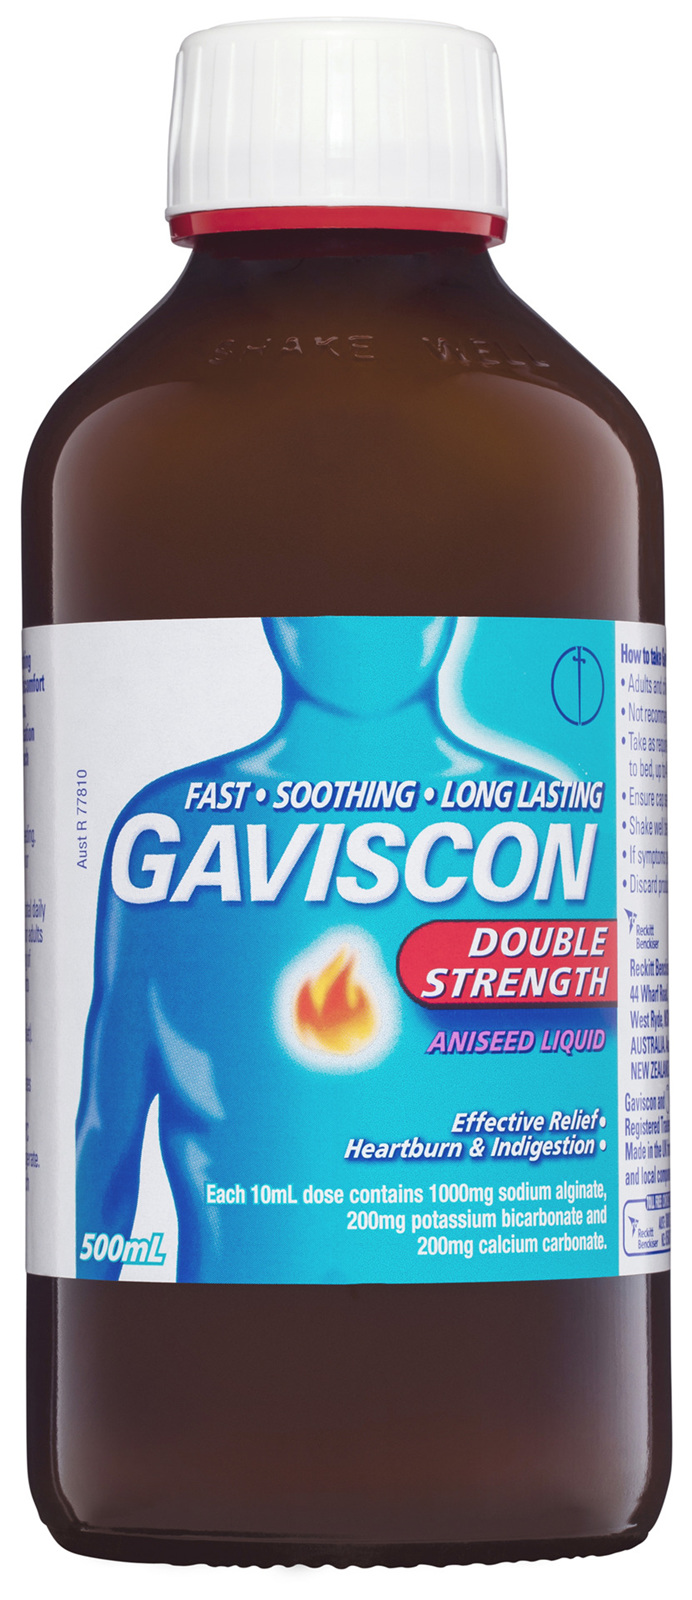 For pregnant gaviscon Can you